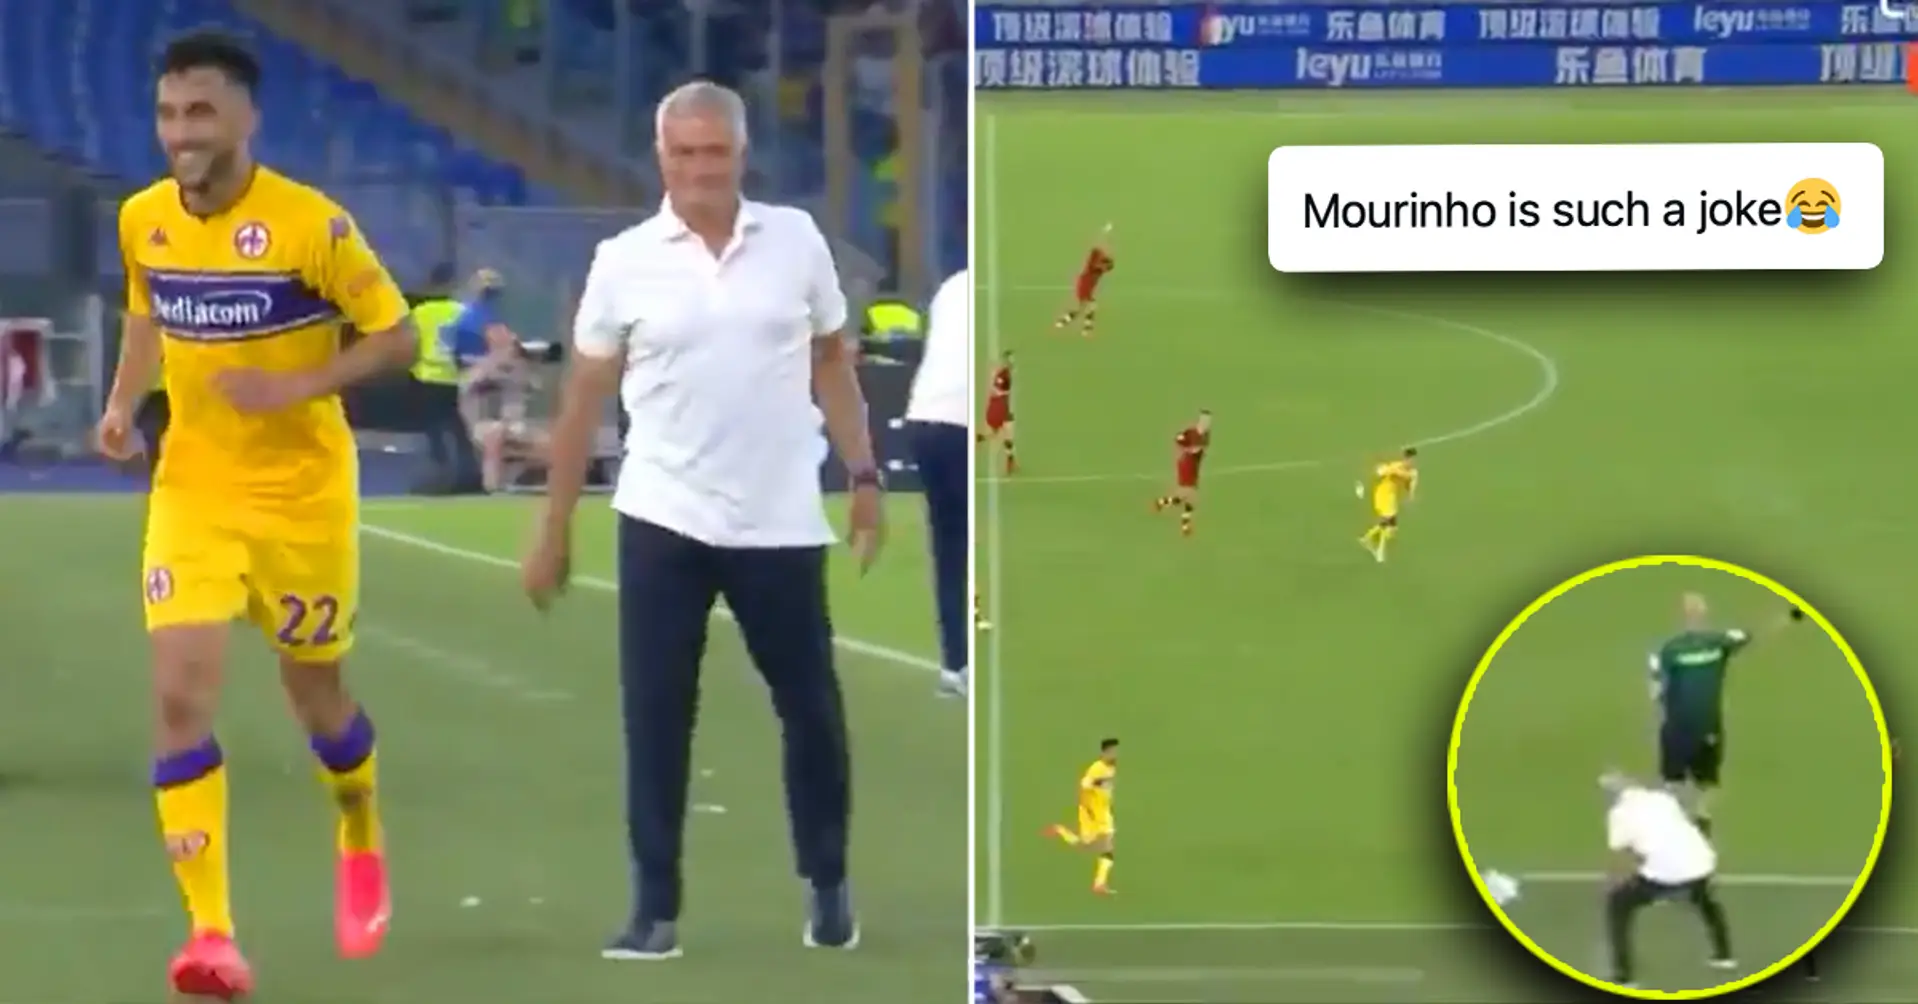 Jose Mourinho lleva a cabo su primer 'trolleo' en la Serie A